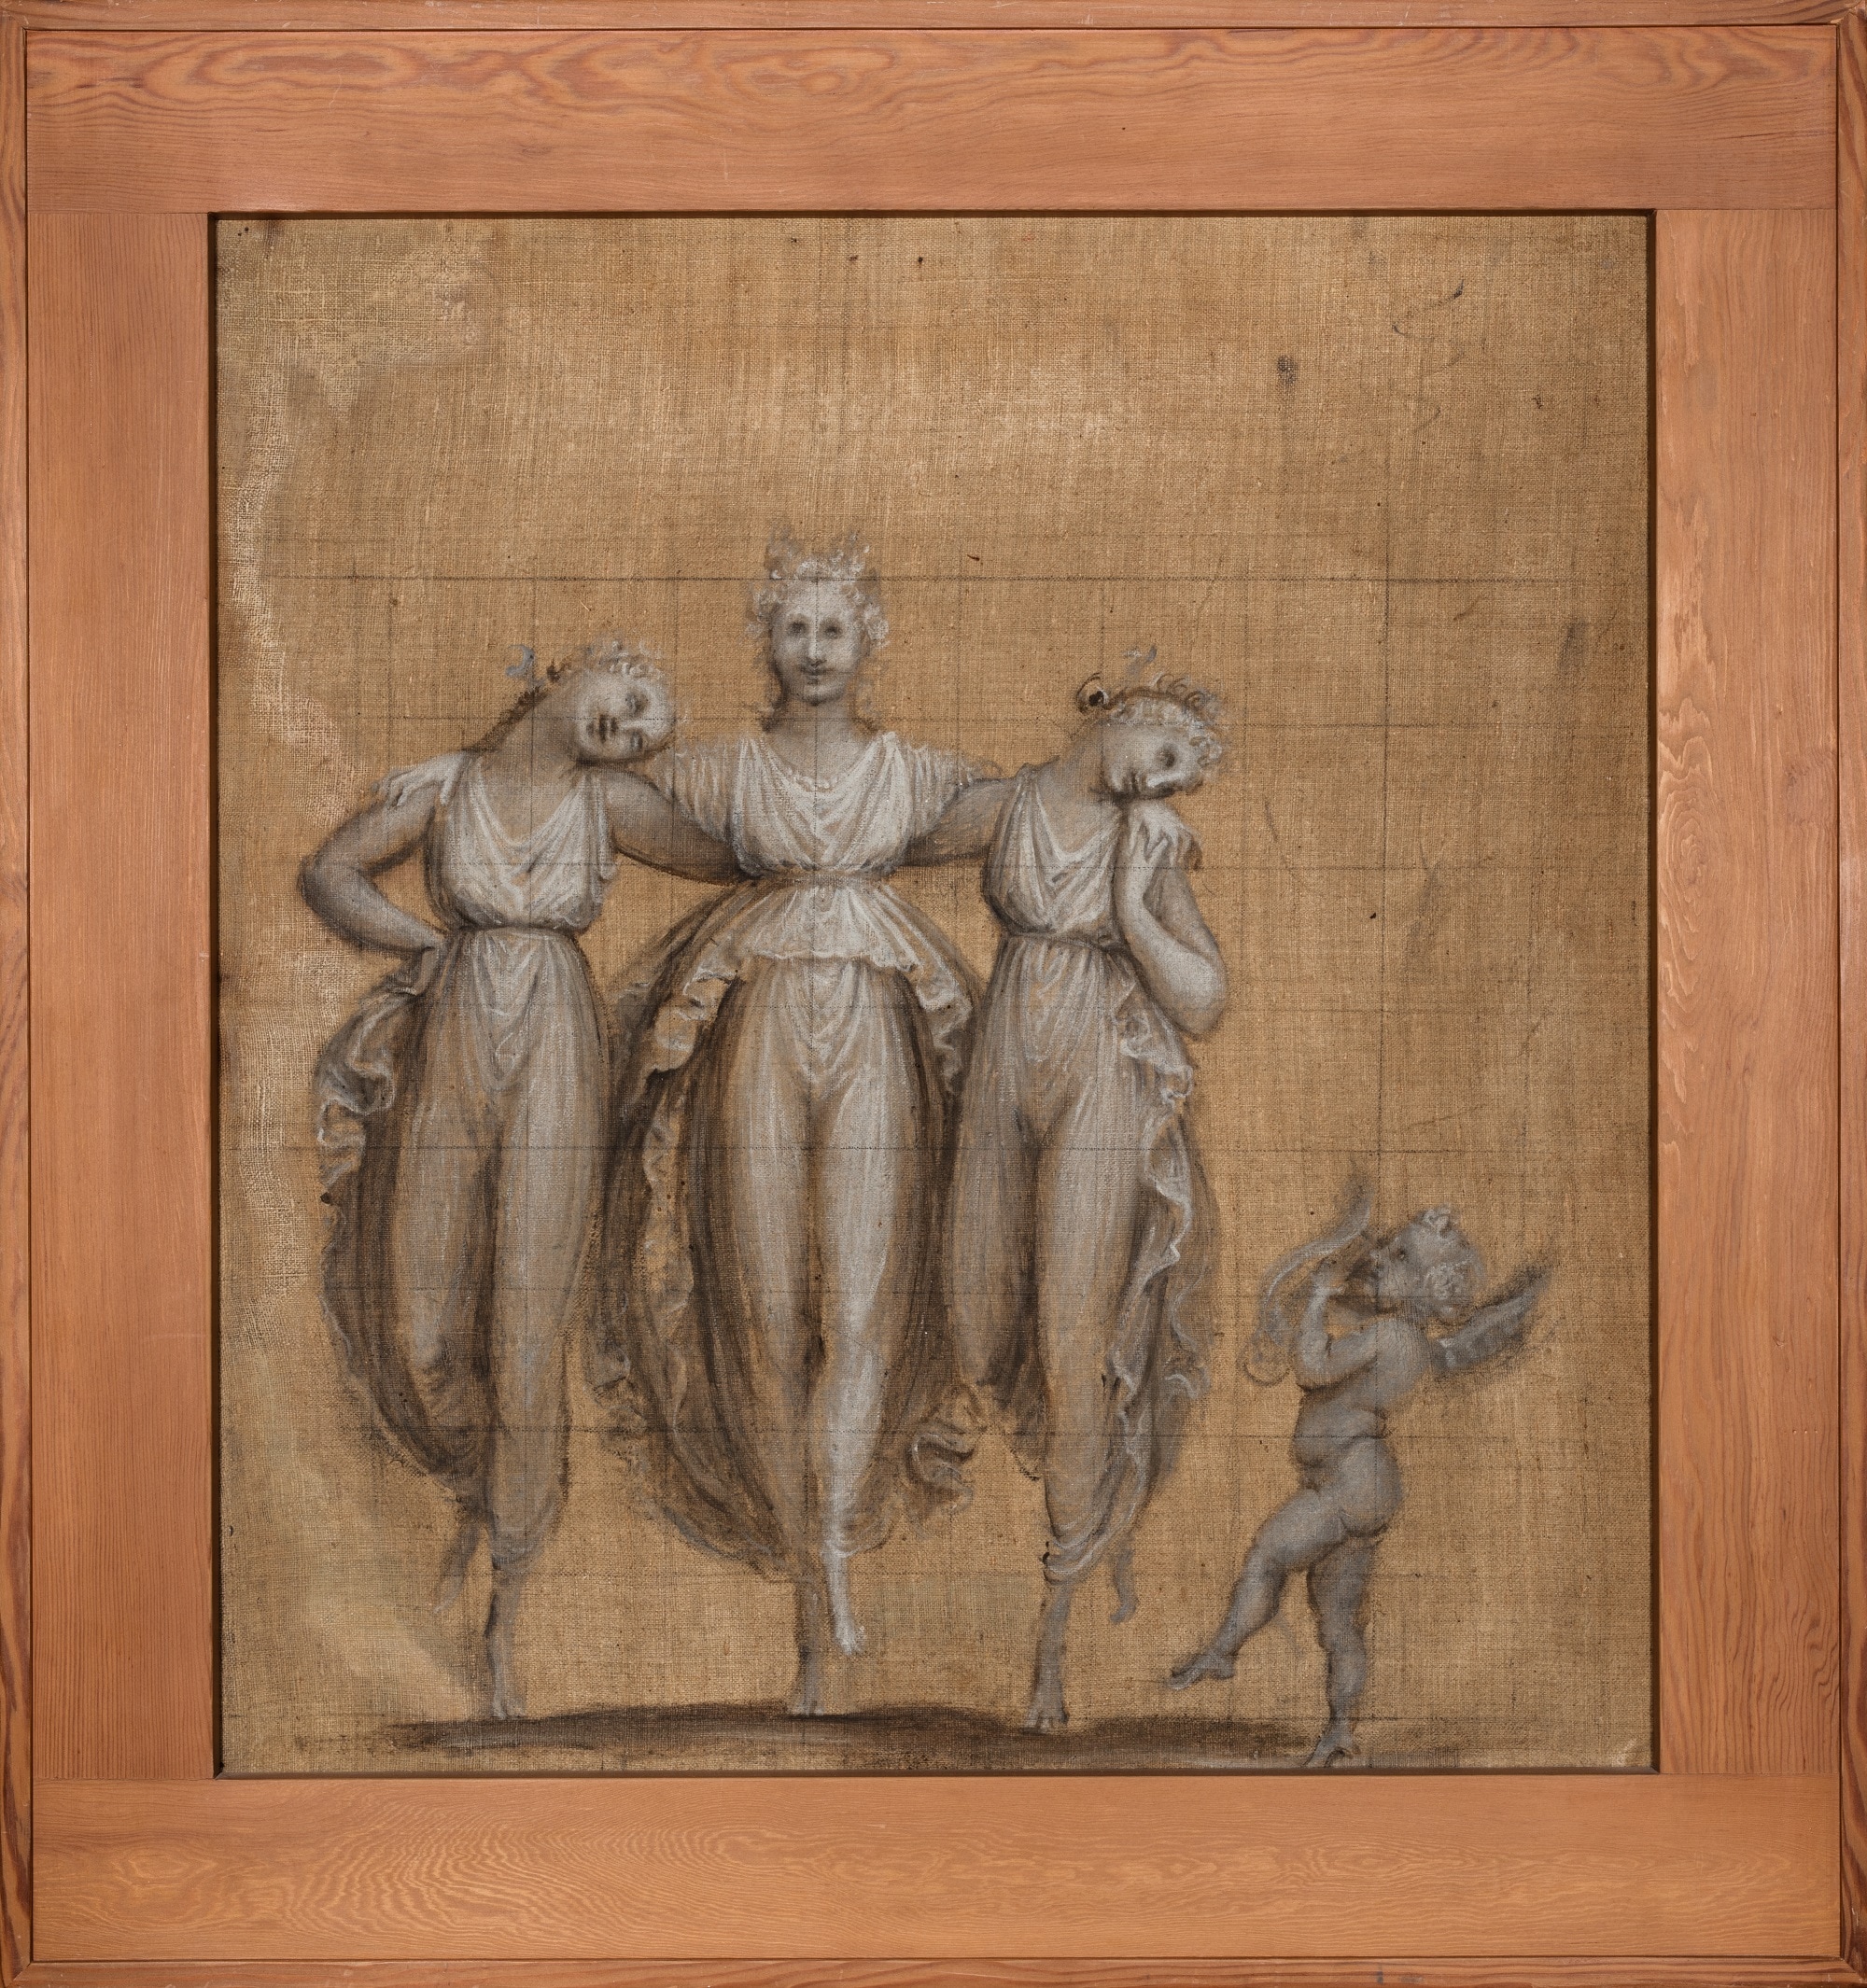 Antonio Canova, Danza delle Grazie con amorino che suona la cetra, 1806 c., Tecnica mista su tela, 65,5x61cm., Bassano del Grappa, Museo Civico